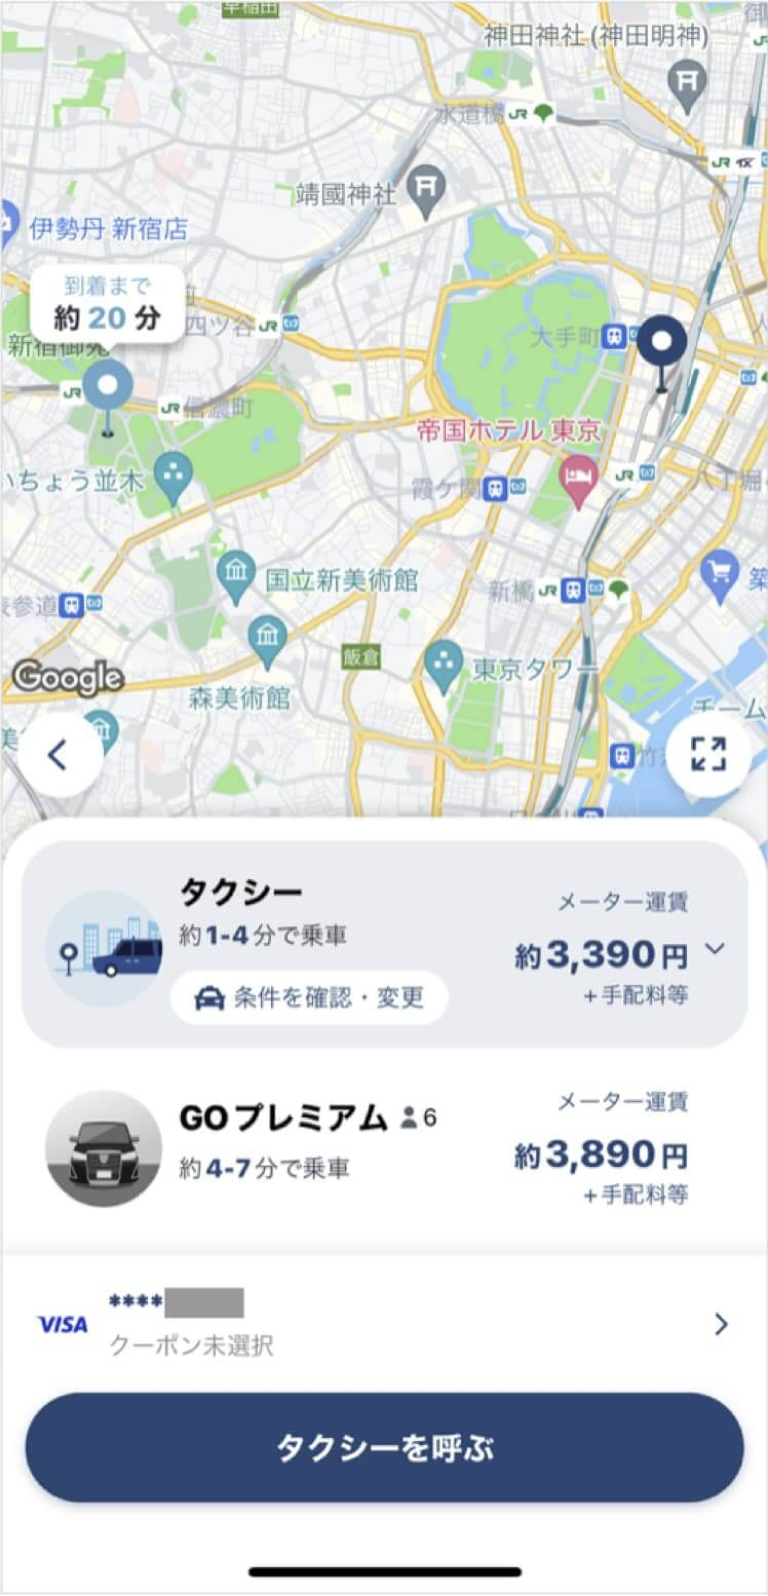 東京駅から国立競技場までのタクシー料金・所要時間まとめ